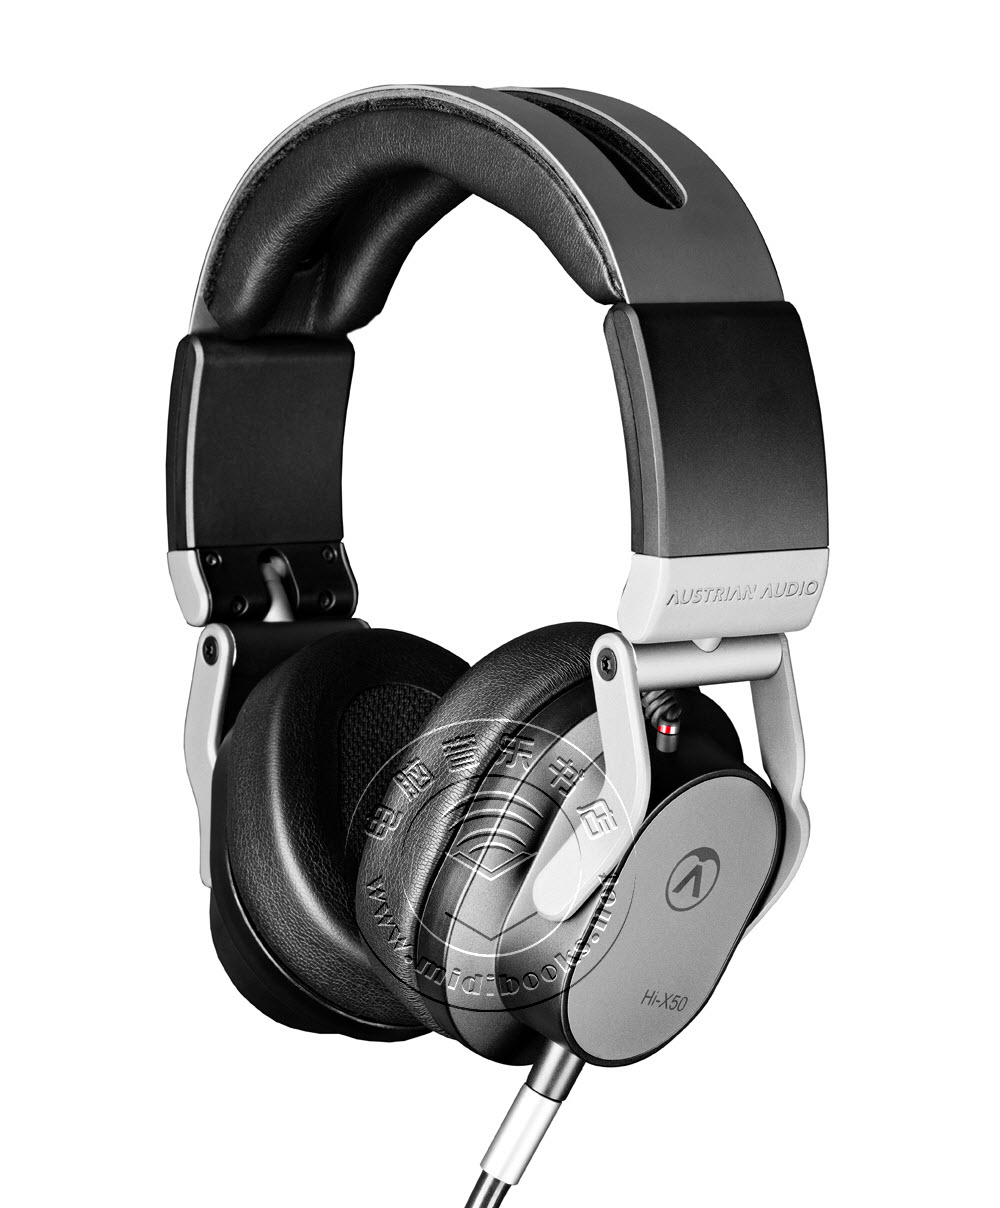 Austrian Audio发布新款专业监听耳机Hi-X50（视频）